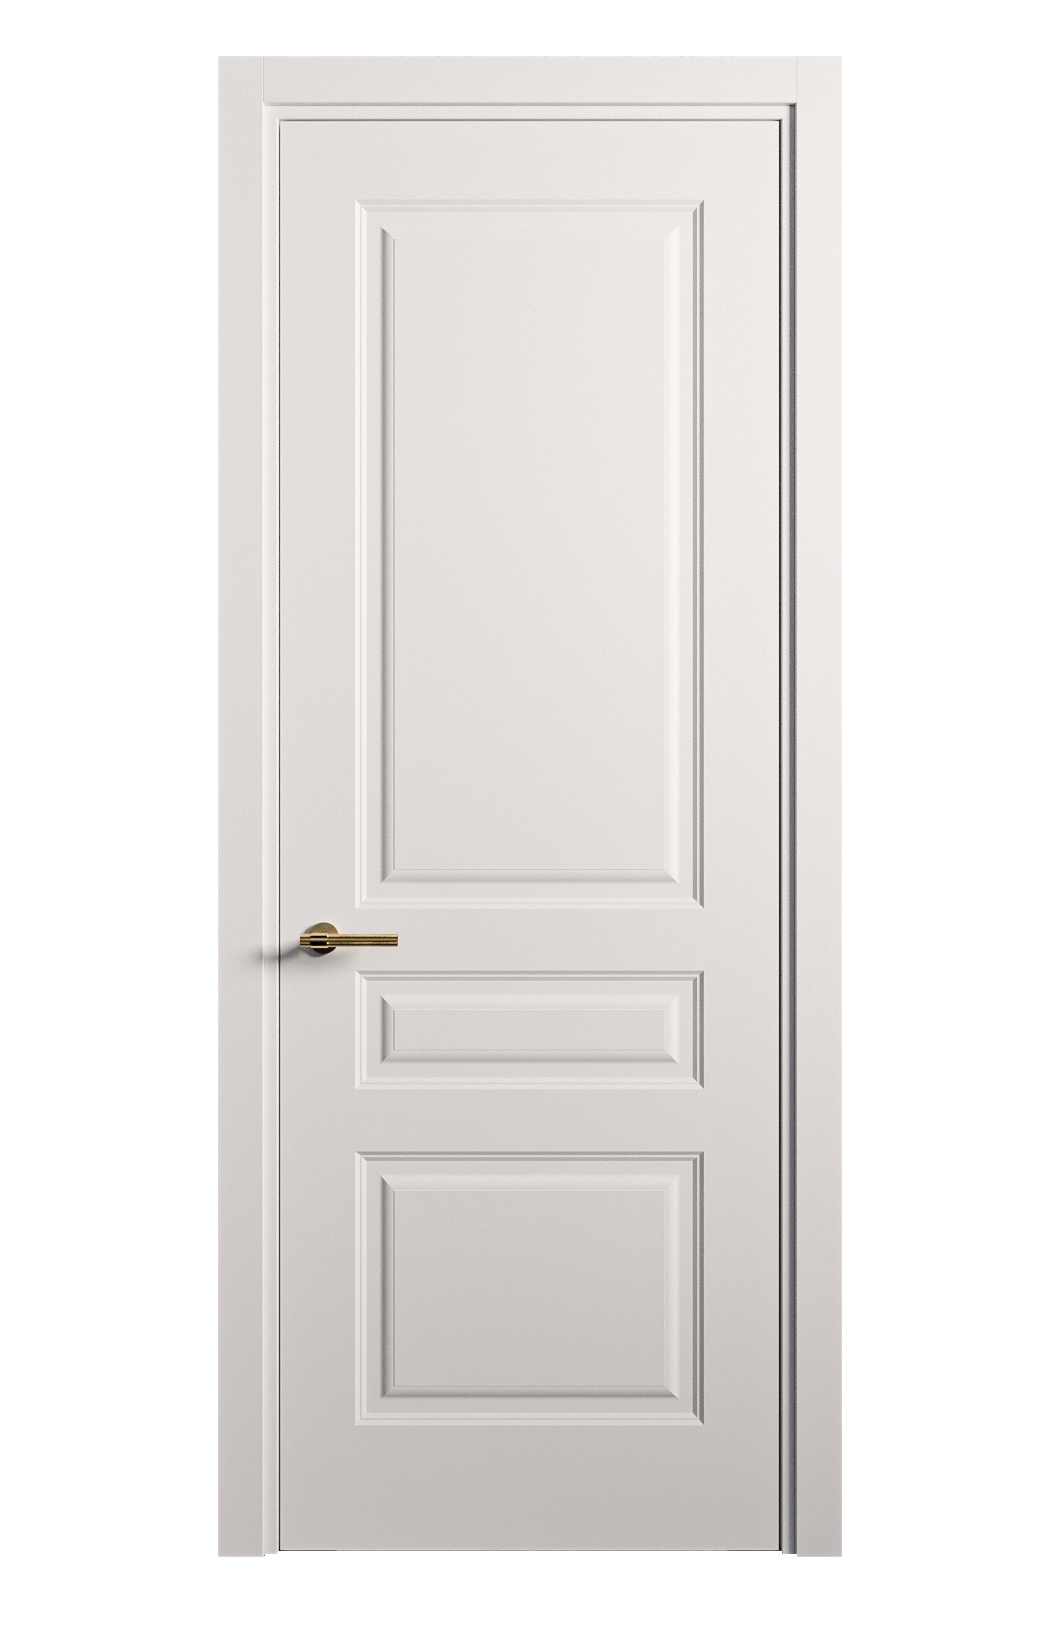 Межкомнатная дверь Вита-2 глухая эмаль ral 9003 26365